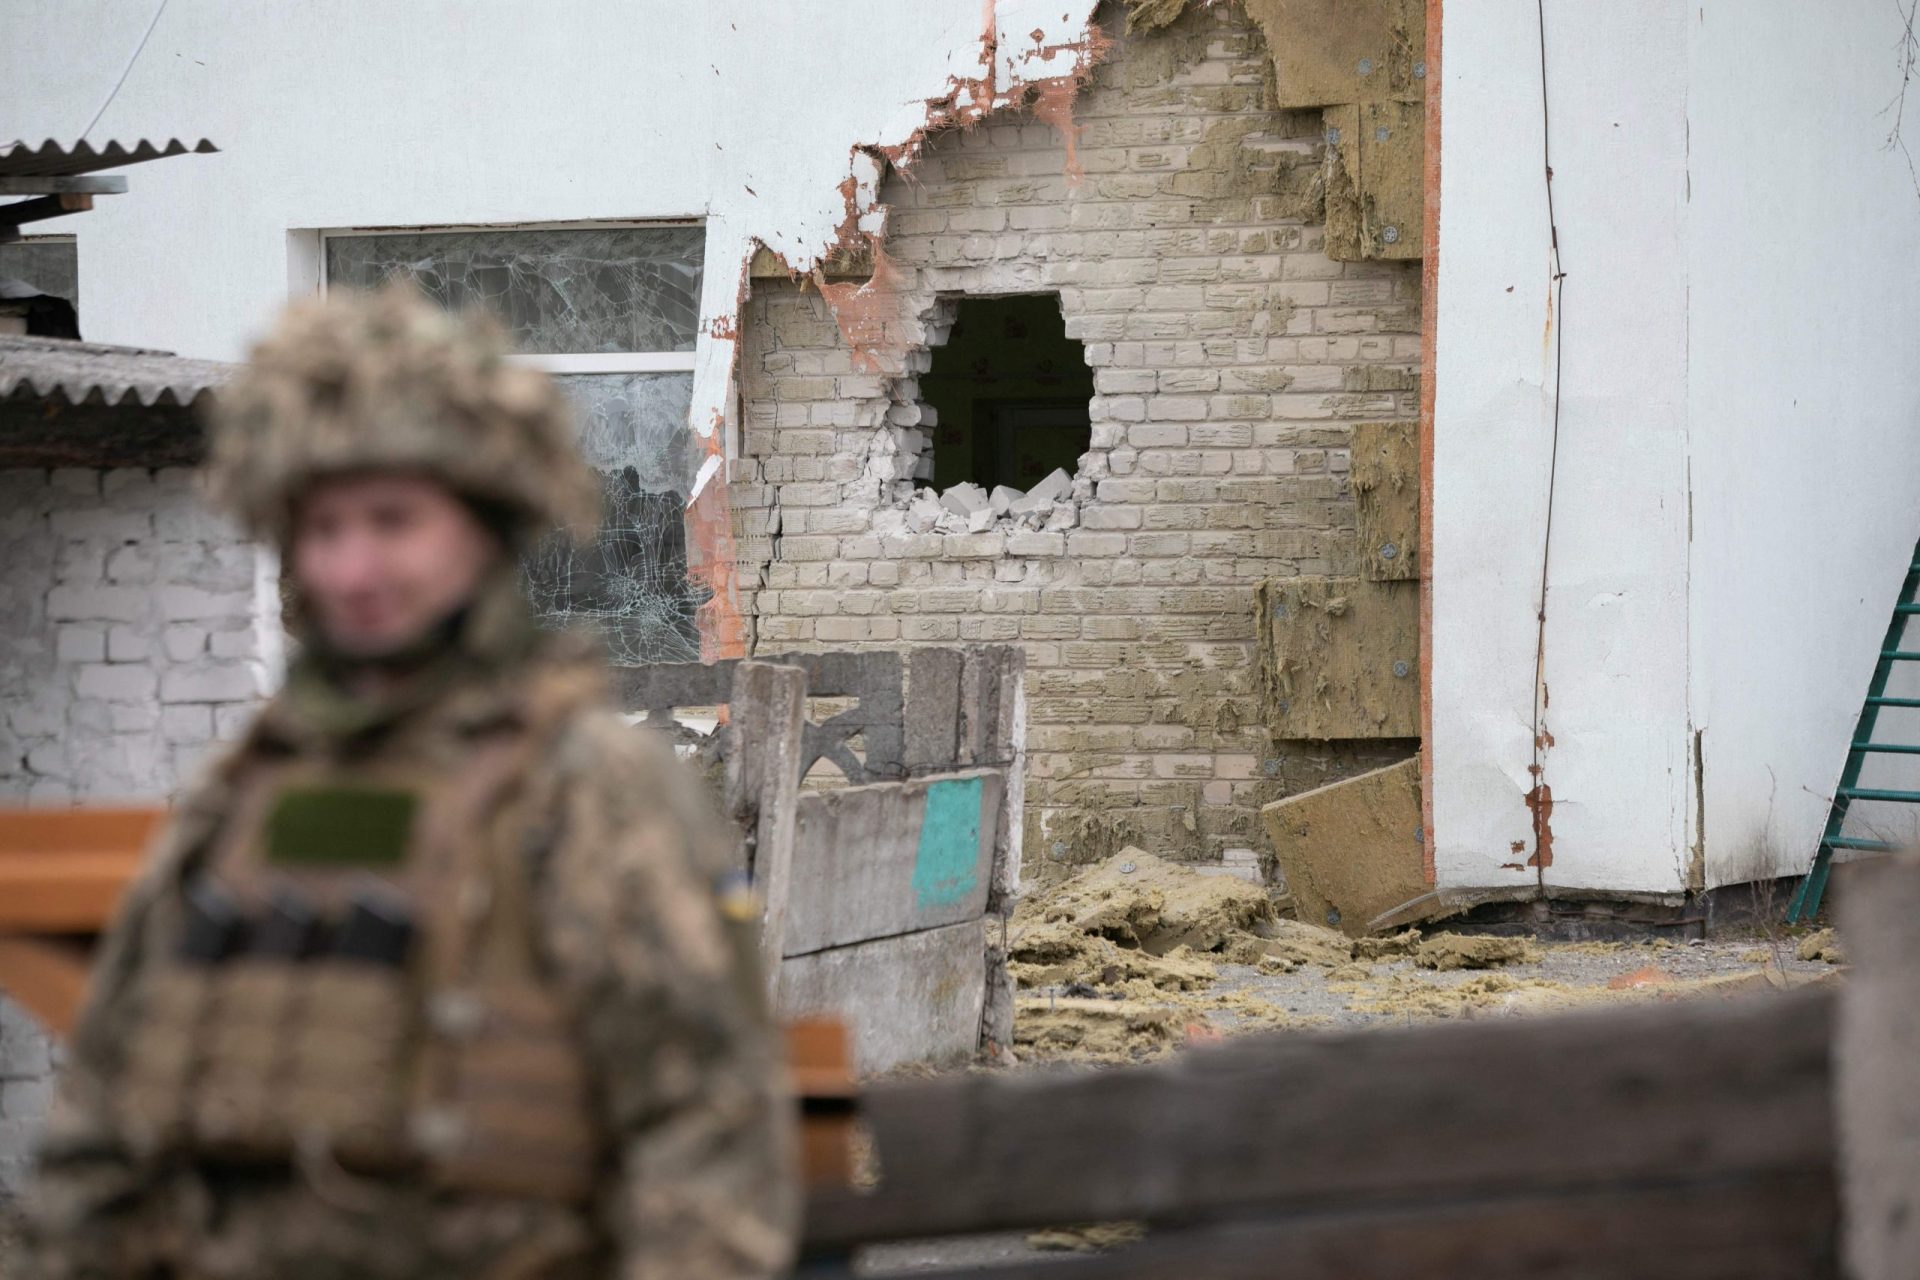 Ministério da Defesa ucraniano regista 60 violações de &#8220;cessar-fogo&#8221; por parte de separatistas pró-Rússia